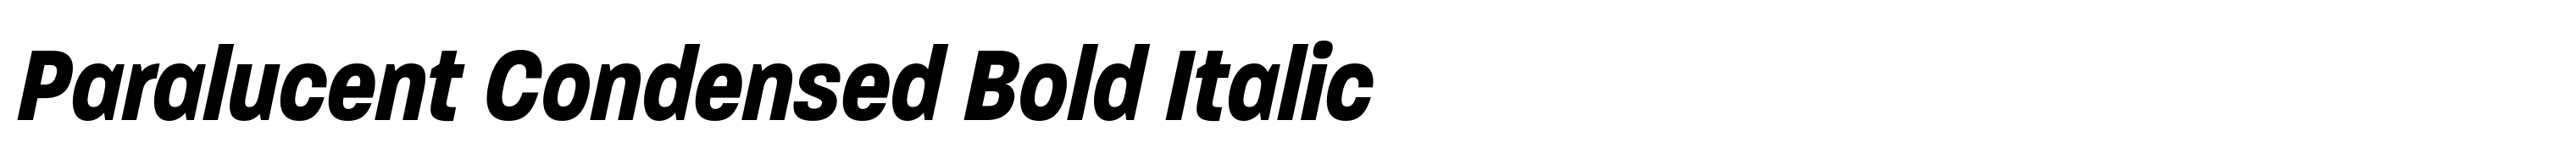 Paralucent Condensed Bold Italic